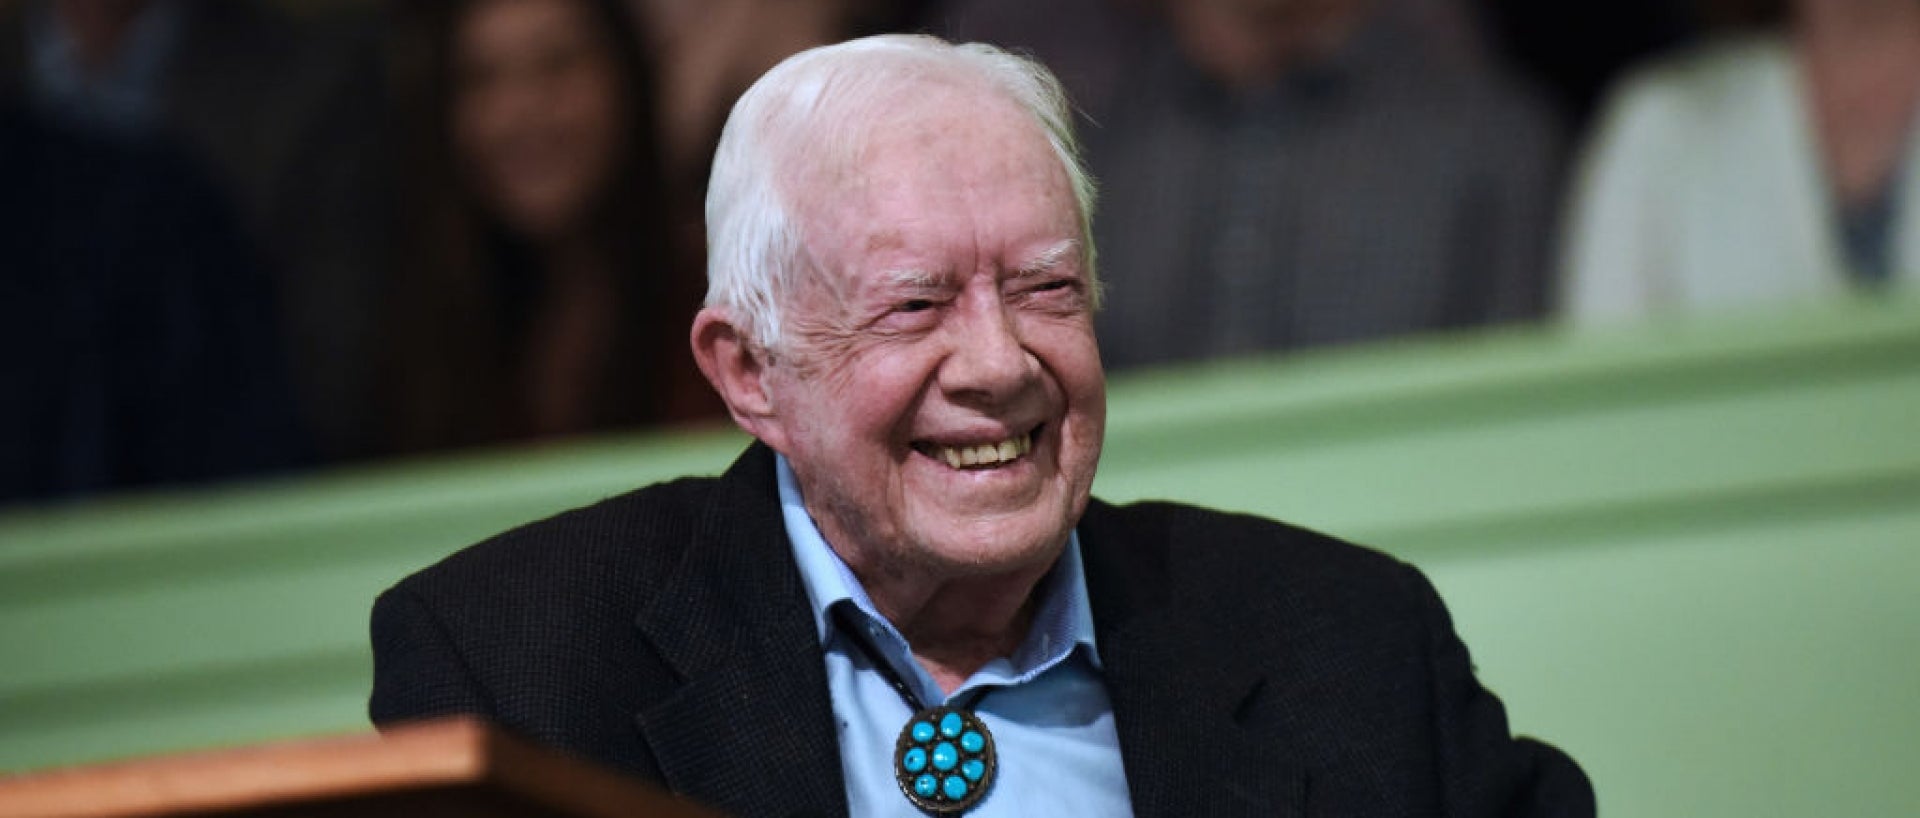 Jimmy Carter smiling sitting at podium